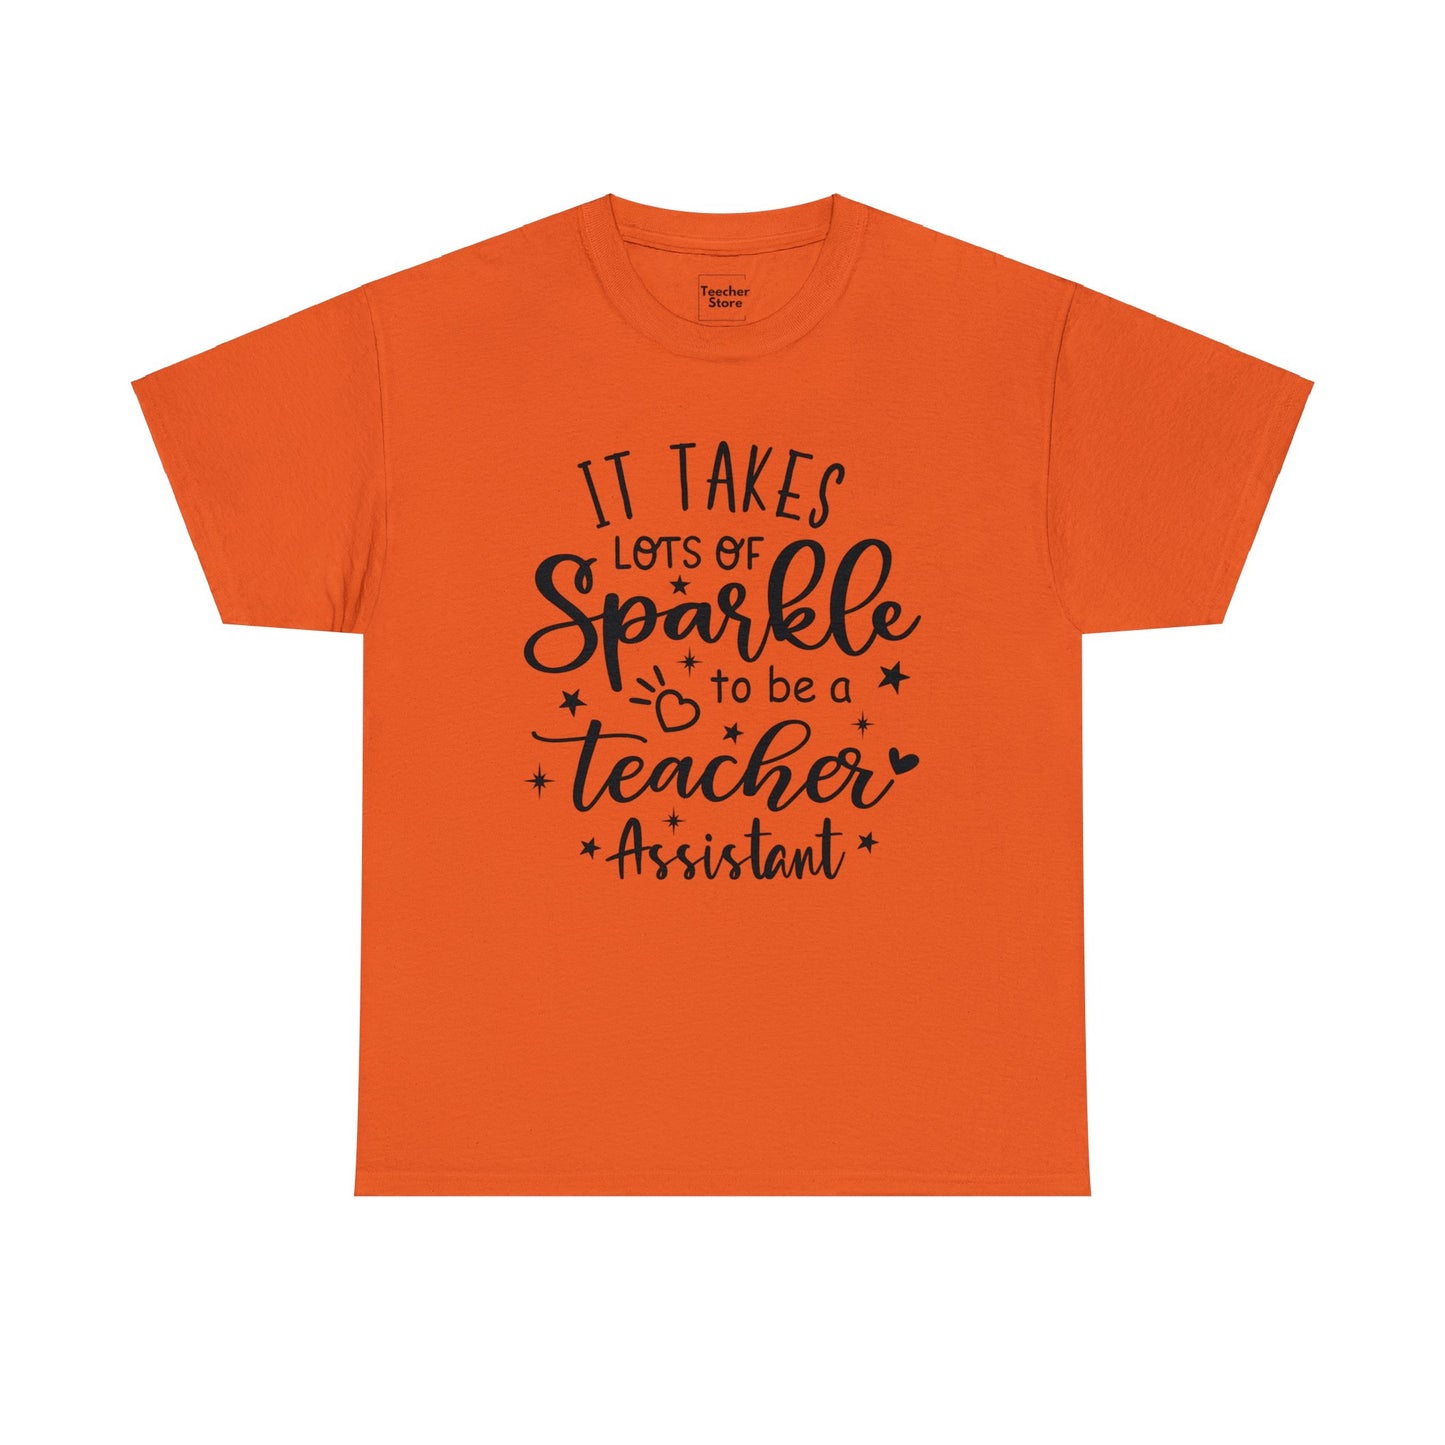 Sparkle Teacher Assistant Tee-Shirt